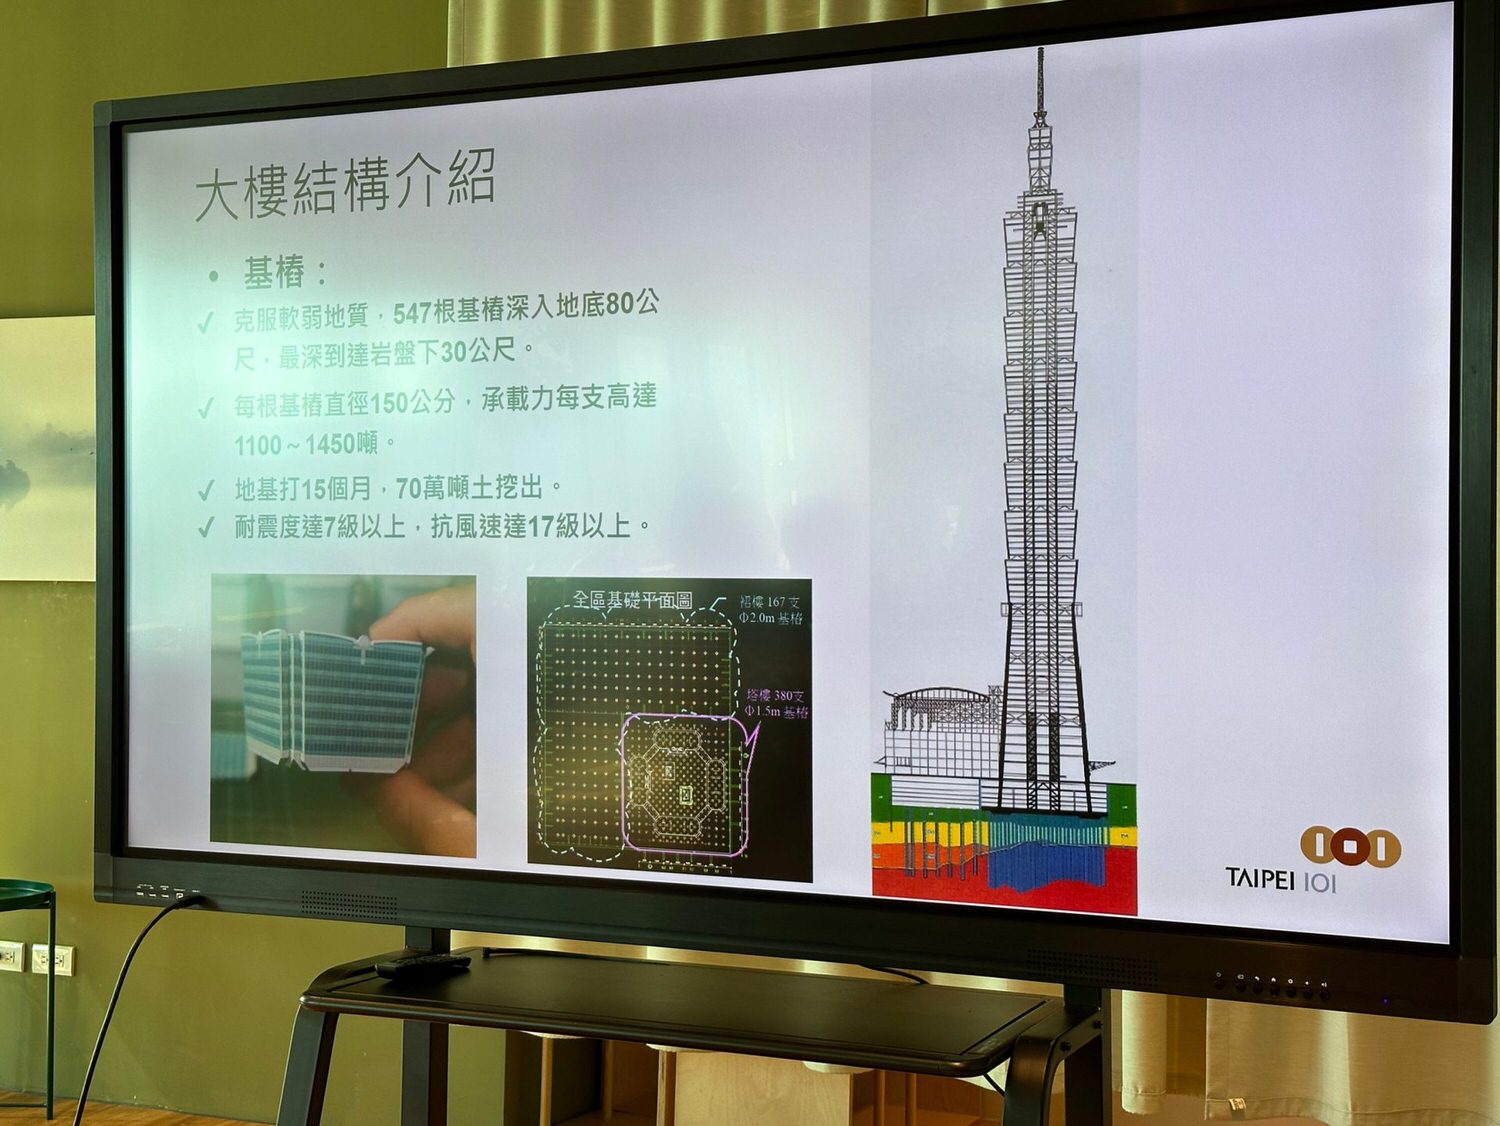 【開箱】台北101大樓建築結構，地震來了如何防範？89樓風阻尼器防震揭秘 Building Tour